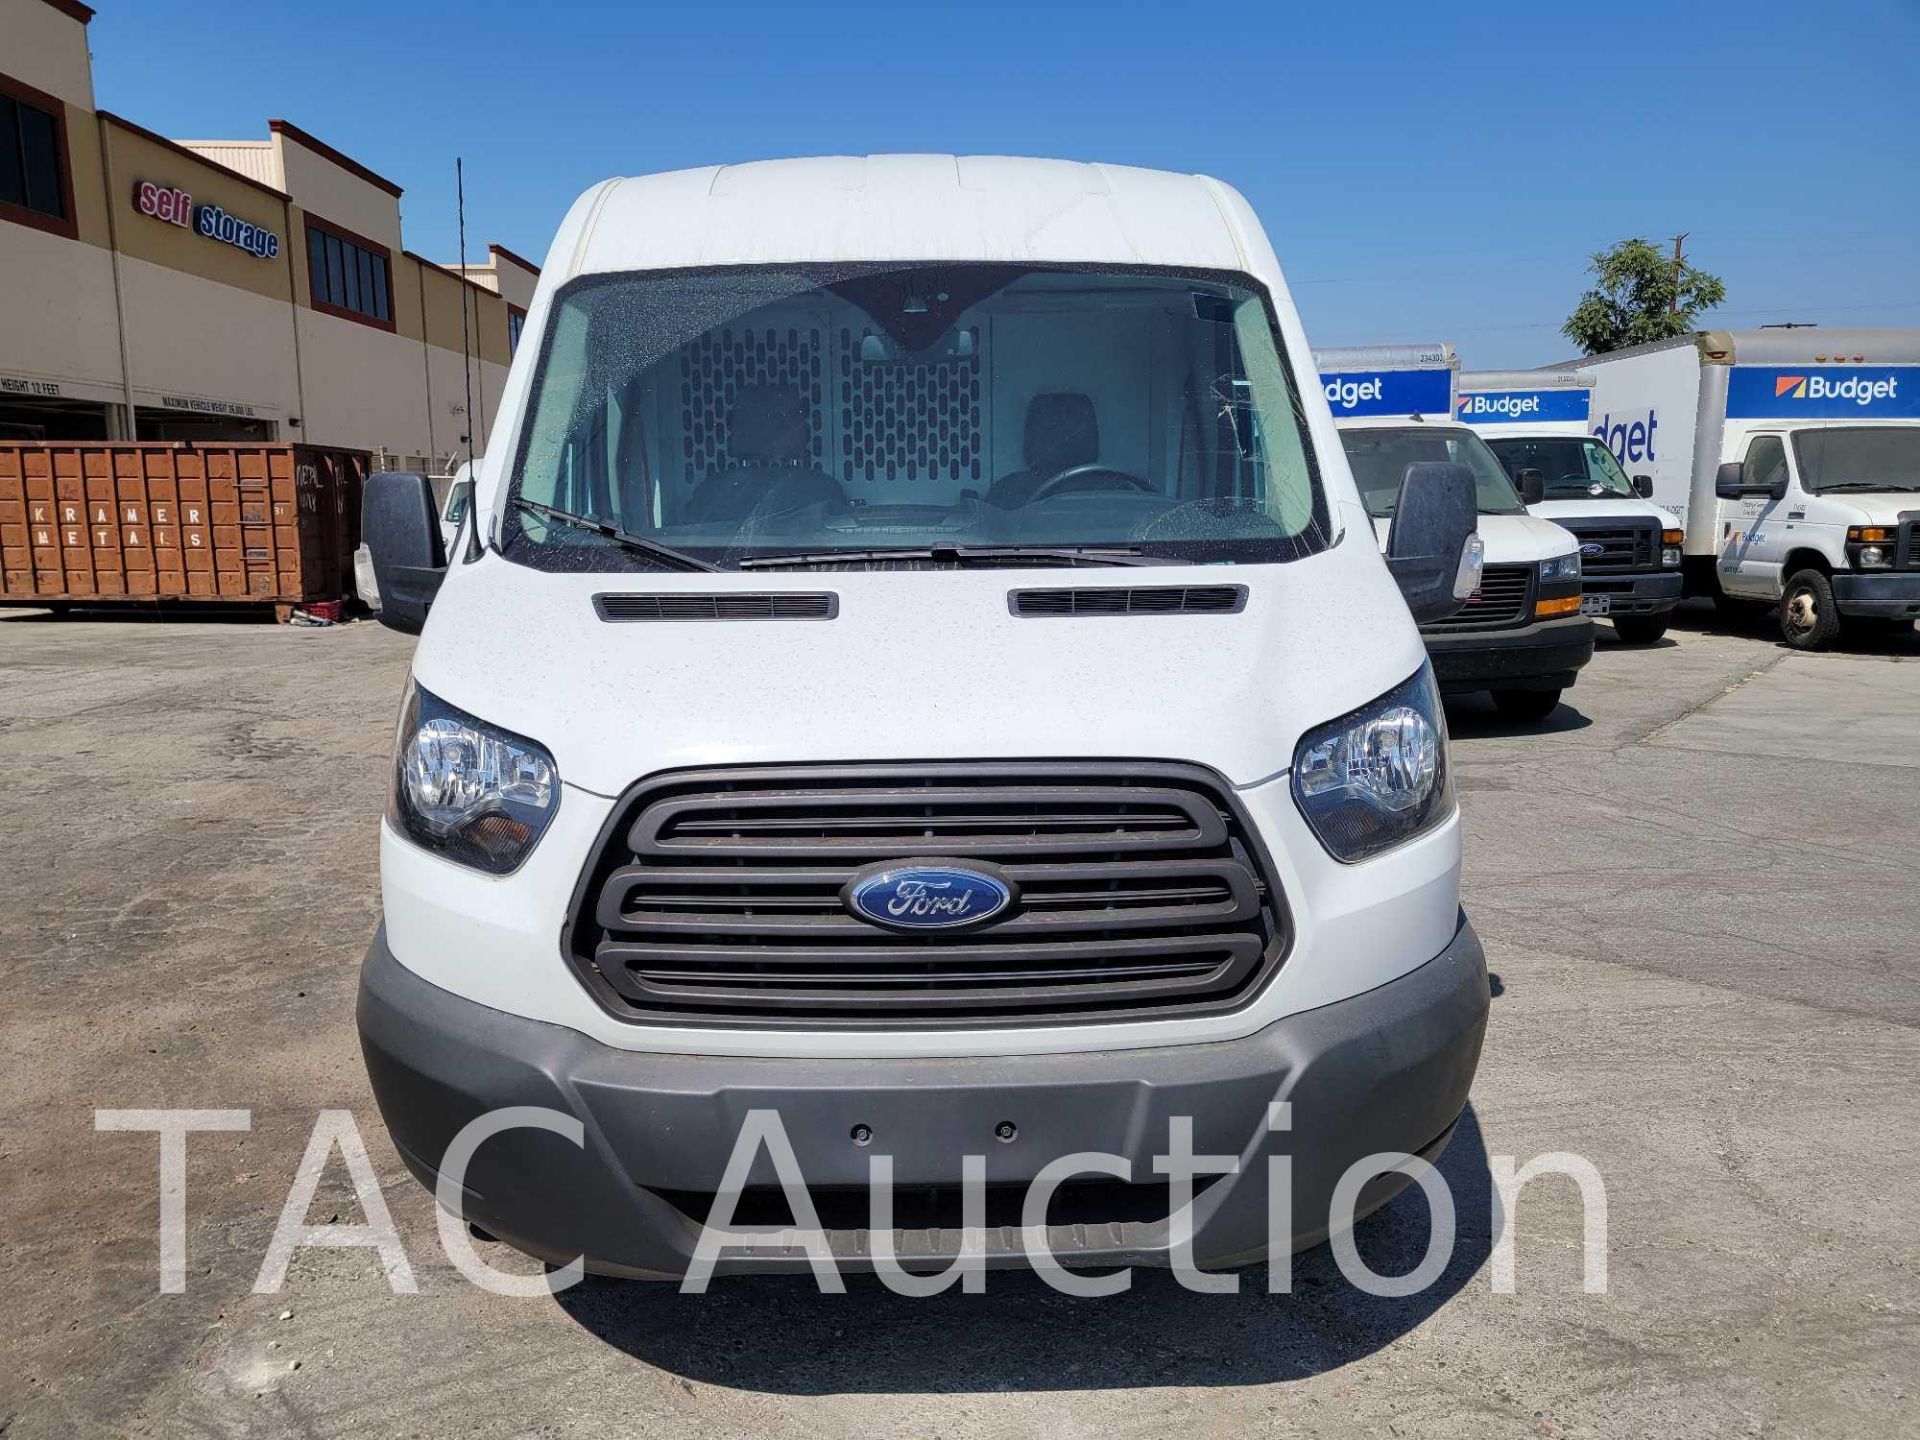 2018 Ford Transit 150 Cargo Van - Image 2 of 47